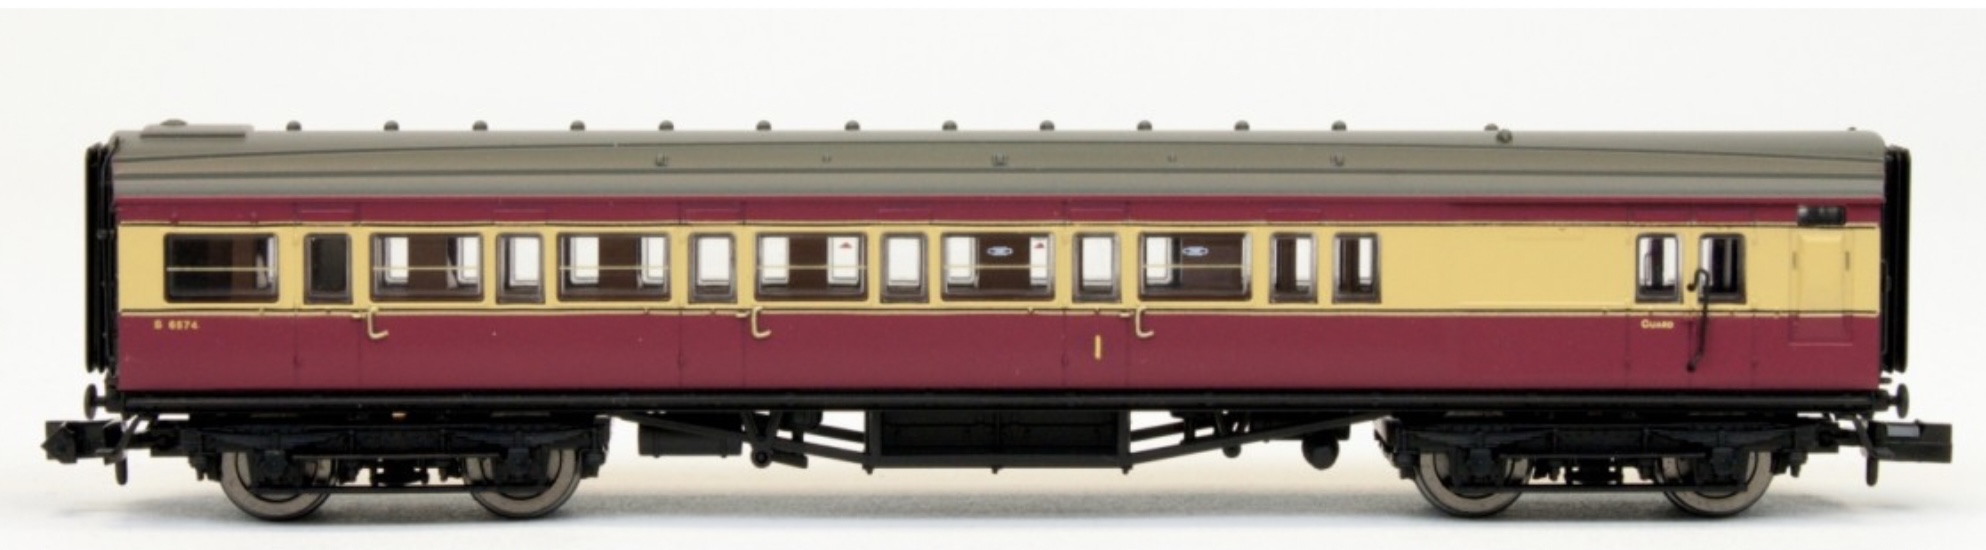 N Scale - Dapol - 2P-012-675 - Passenger Car, Coach, Maunsell, 3rd Class - British Rail - 6574